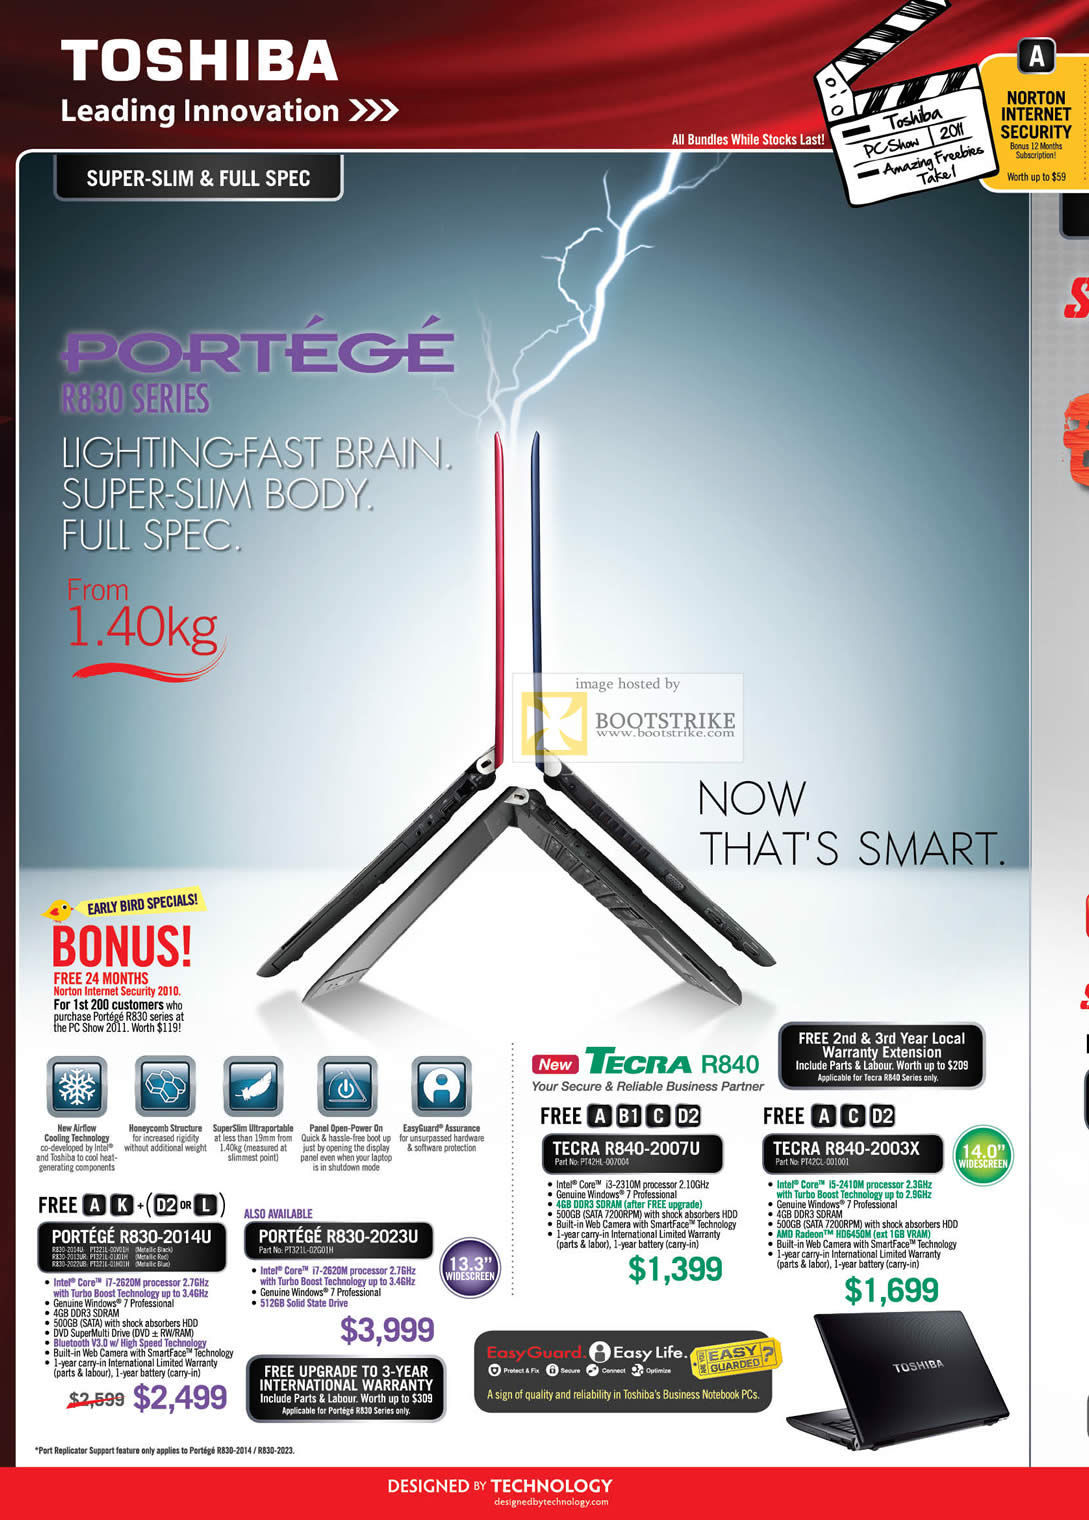 PC Show 2011 price list image brochure of Toshiba Notebooks Portege R830-2014U 2023U R840-2007U 2003X